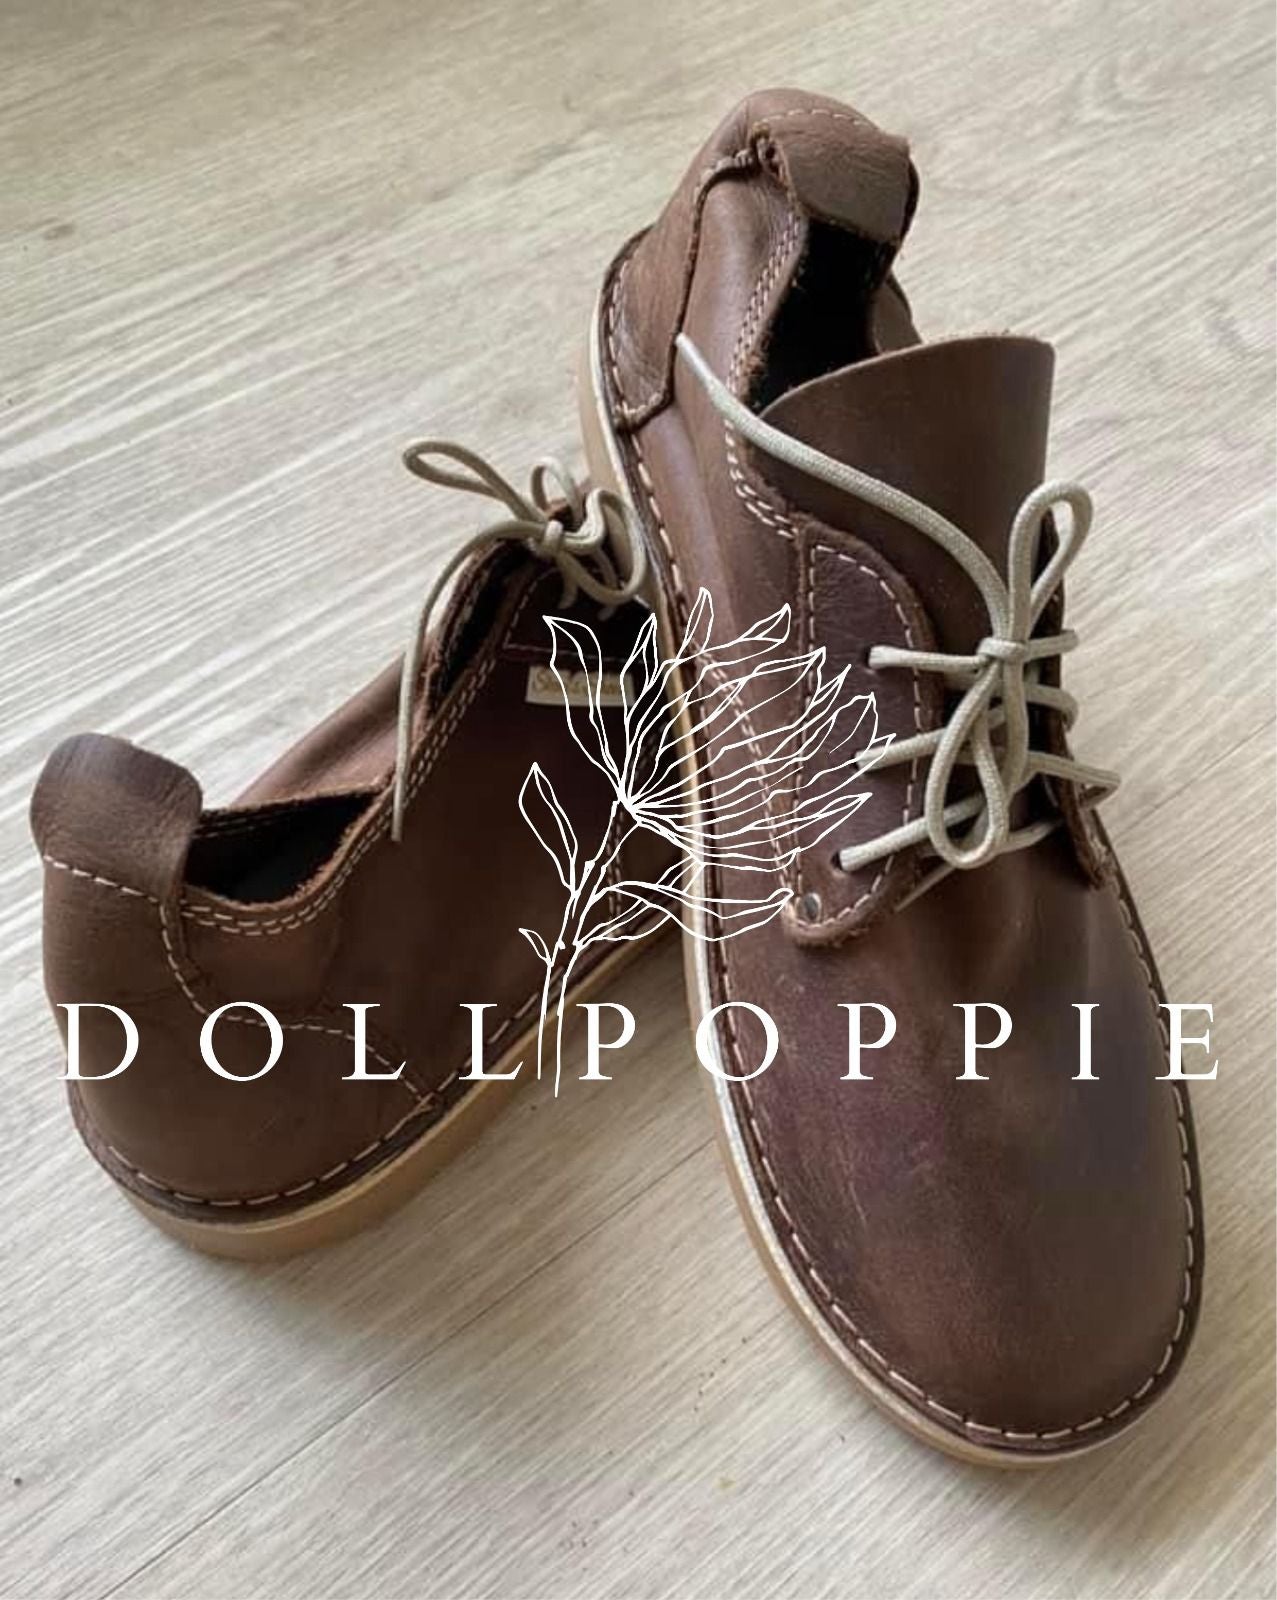 Dollpoppie - Mans Vellie - Diesel Brown